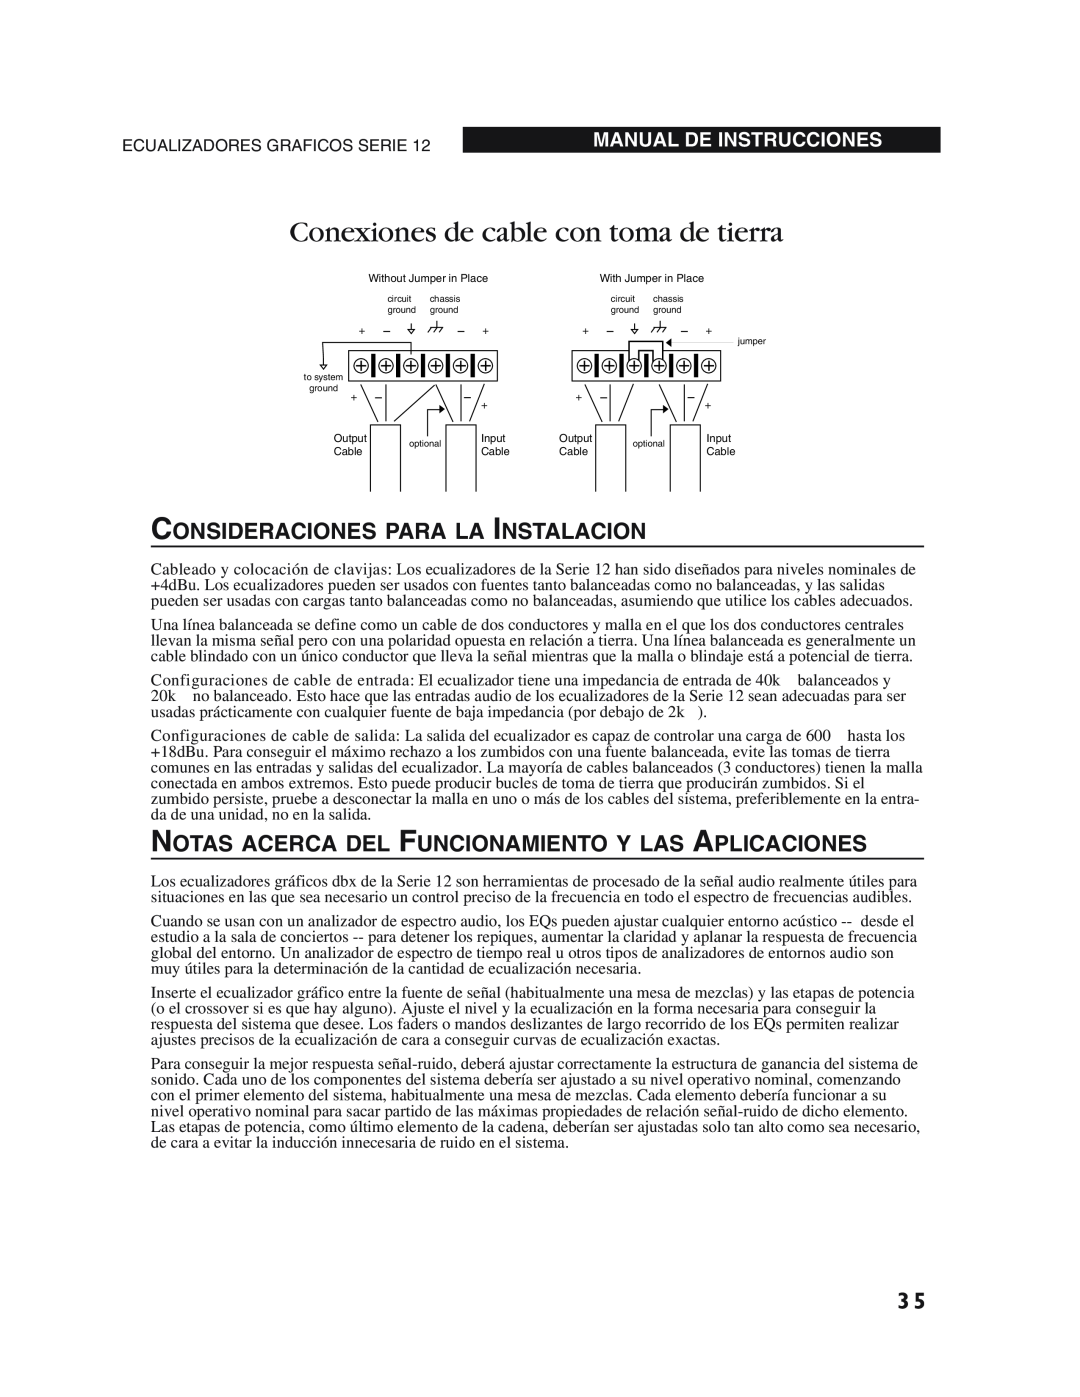 dbx Pro 12 Series Conexiones de cable con toma de tierra, Consideraciones Para La Instalacion, Manual De Instrucciones 